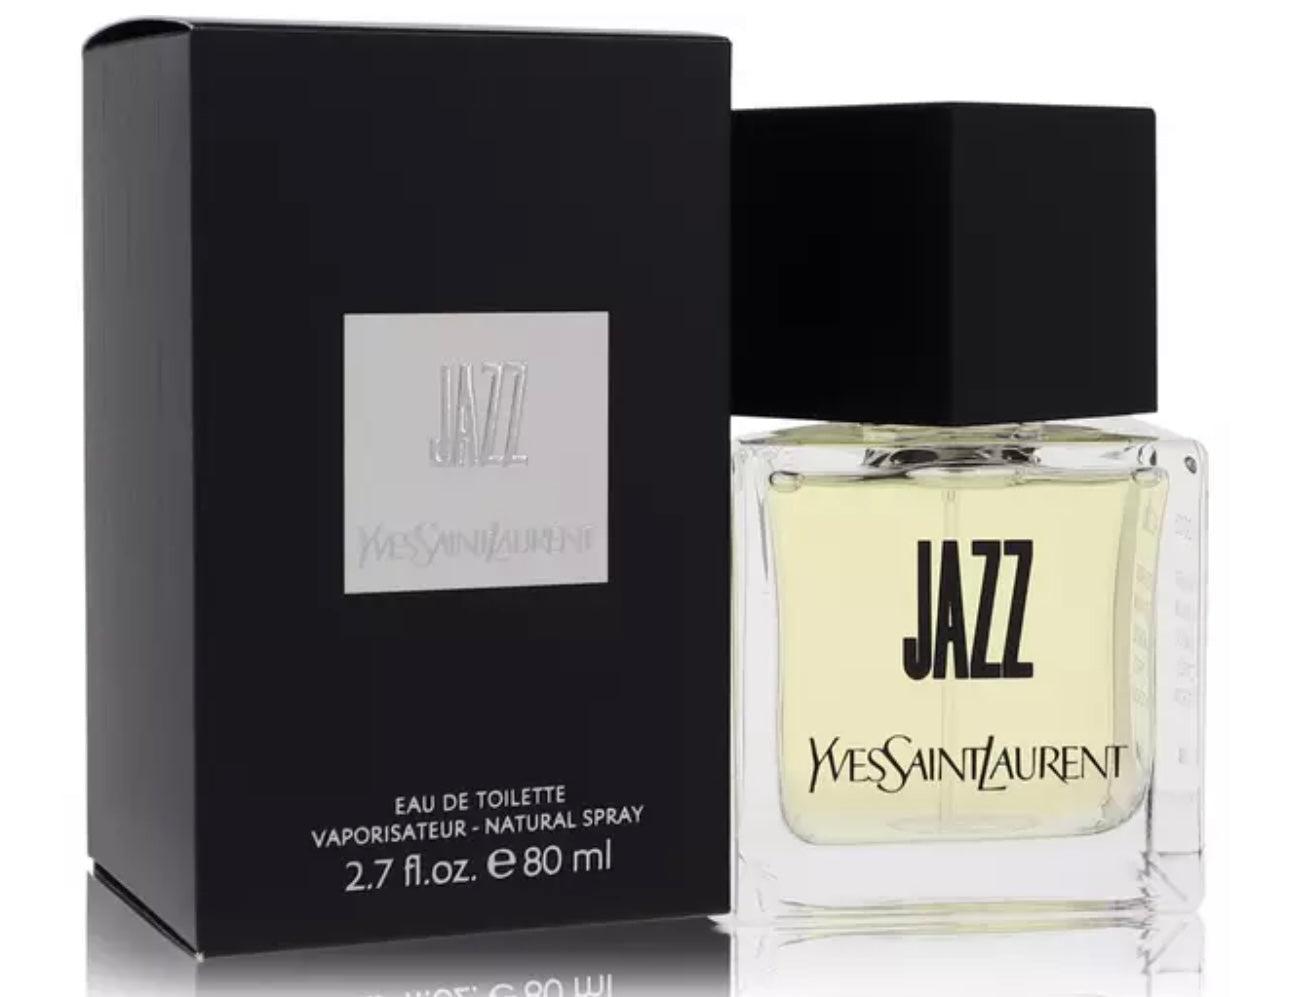  Jazz FOR MEN by Yves Saint Laurent - 3.4 oz EDT Spray : Eau De  Toilettes : Beauty & Personal Care